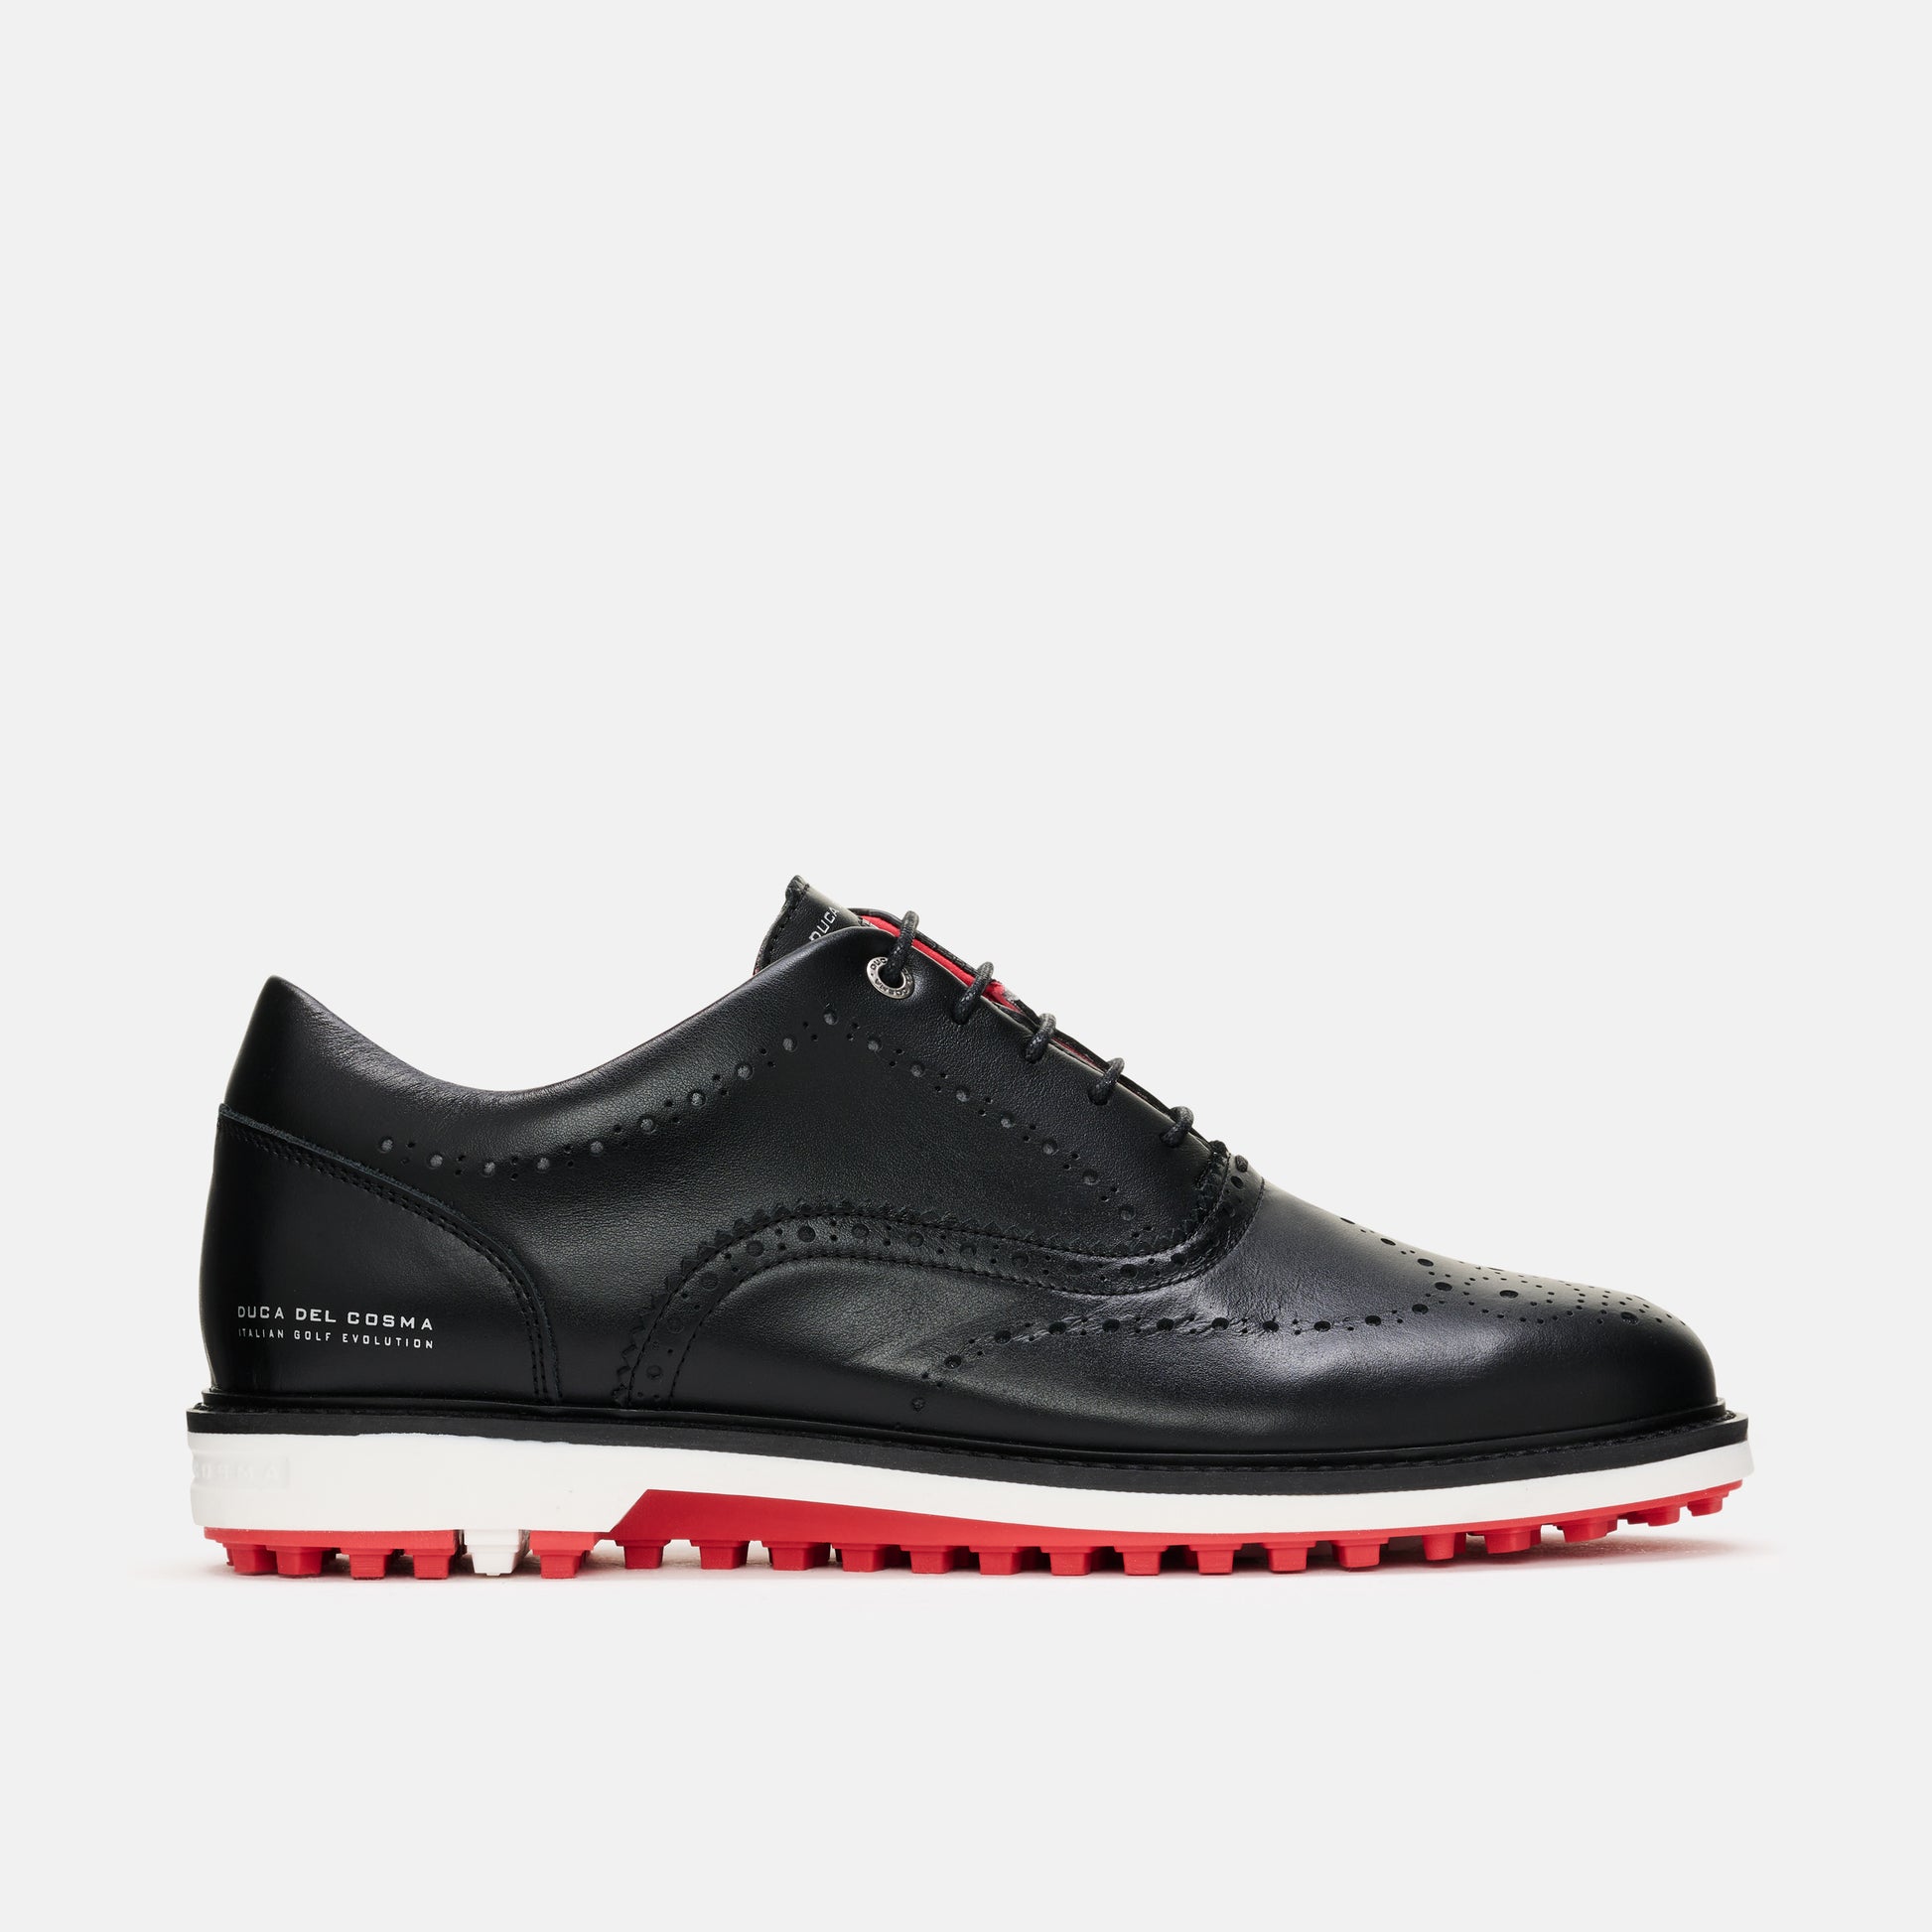 Men's Black Golf Shoes, Men's Golf Shoes , Duca del Cosma.